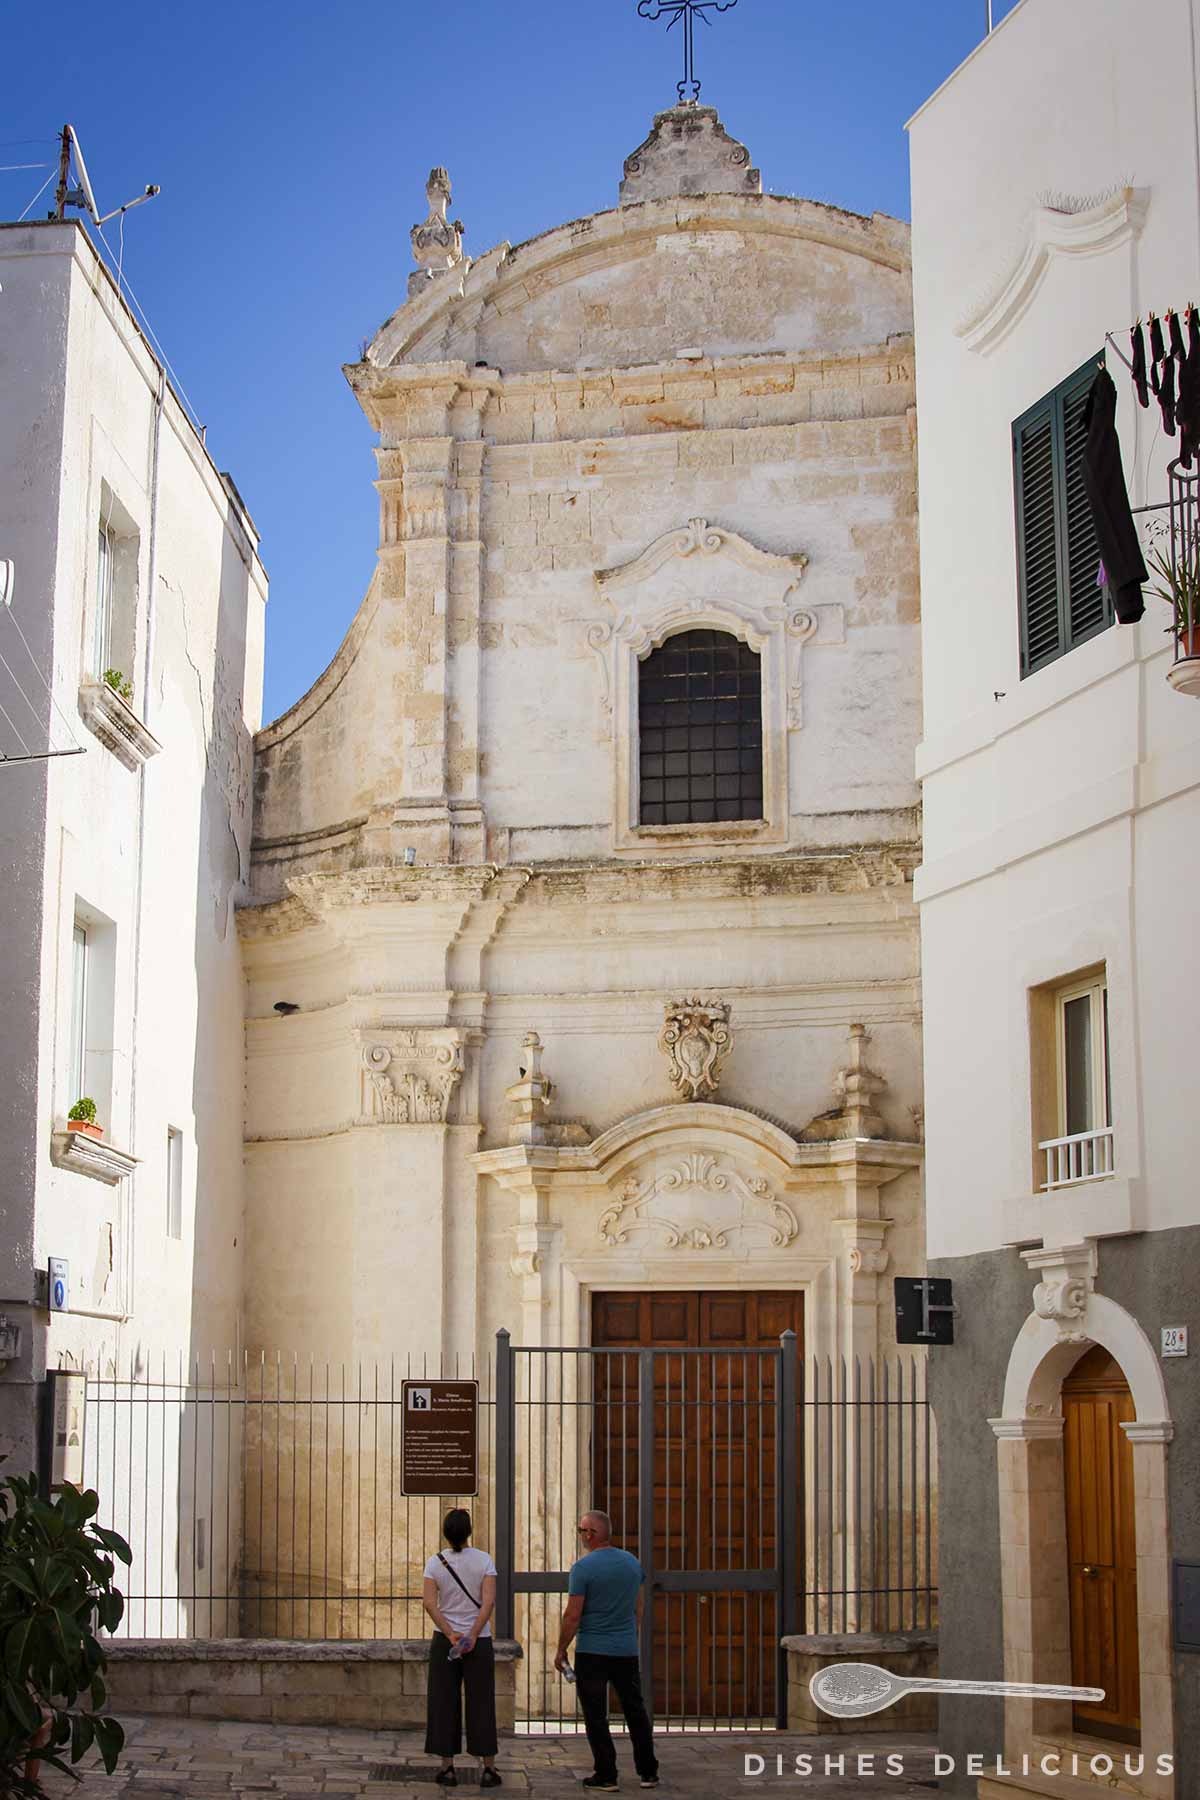 Die kleine Barockkirche Amalfitana – eingeklemmt zwischen Häusern.